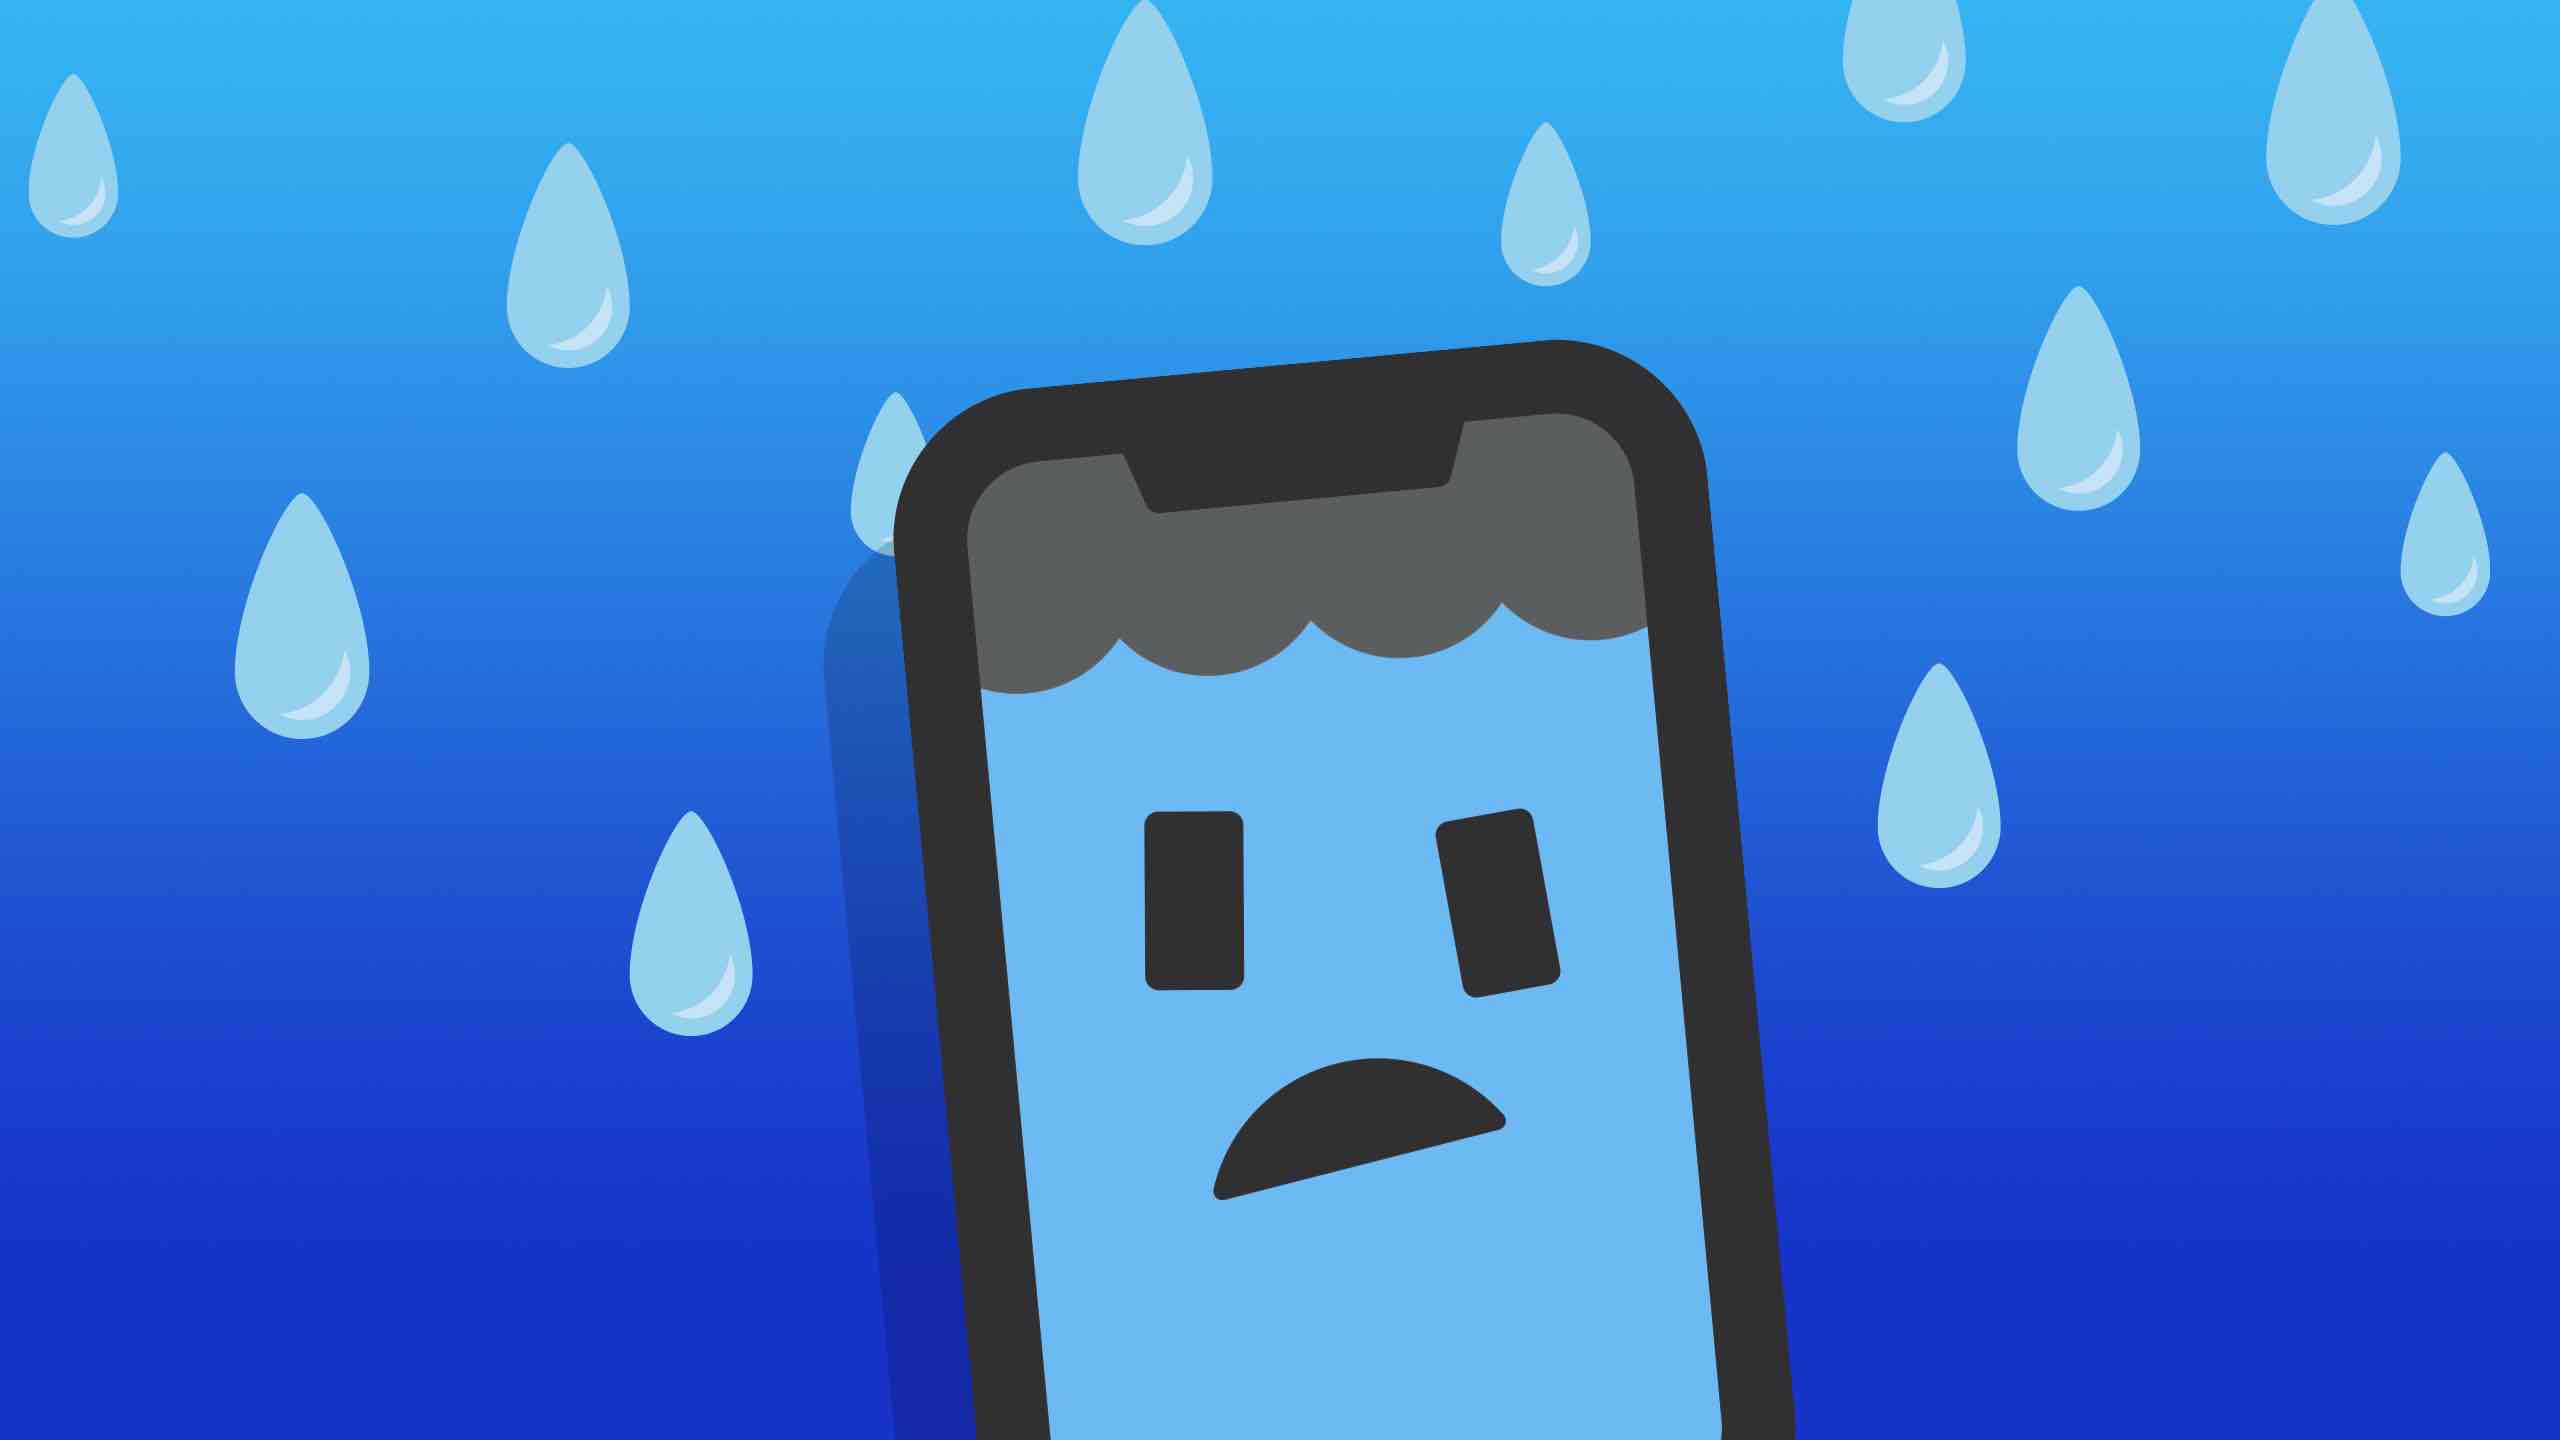 Gran caso Impermeable Seco Bolsa Bolsa para el teléfono móvil iPhone X bajo el agua 